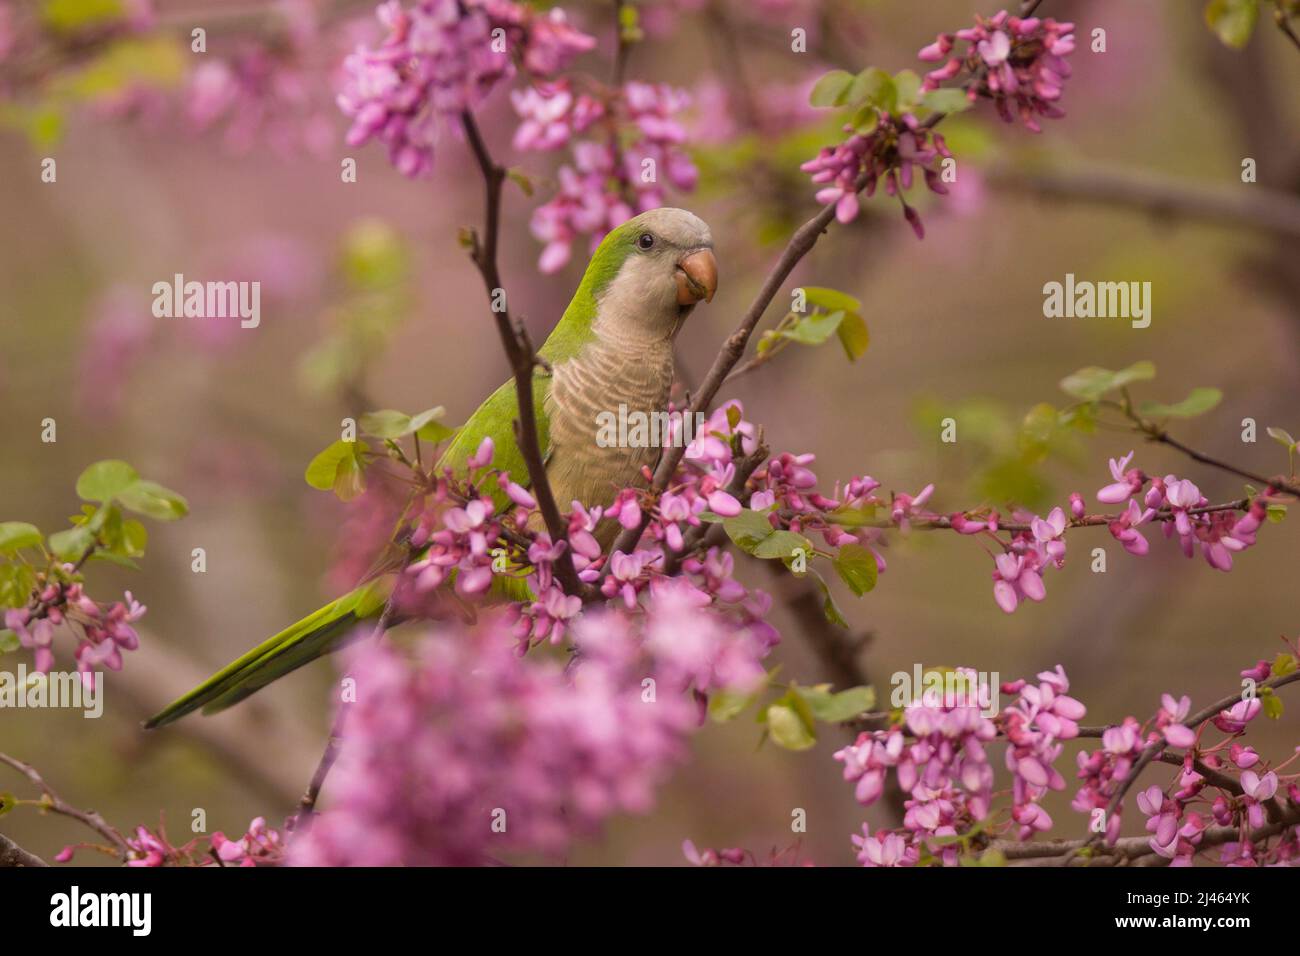 Monaco Parakeet, tra i fiori malva di un Judas-treealso (Cercis siliquastrum) questo uccello ferale conosciuto come il Parrot Quaker, (Myiopsitta monachus) o Foto Stock